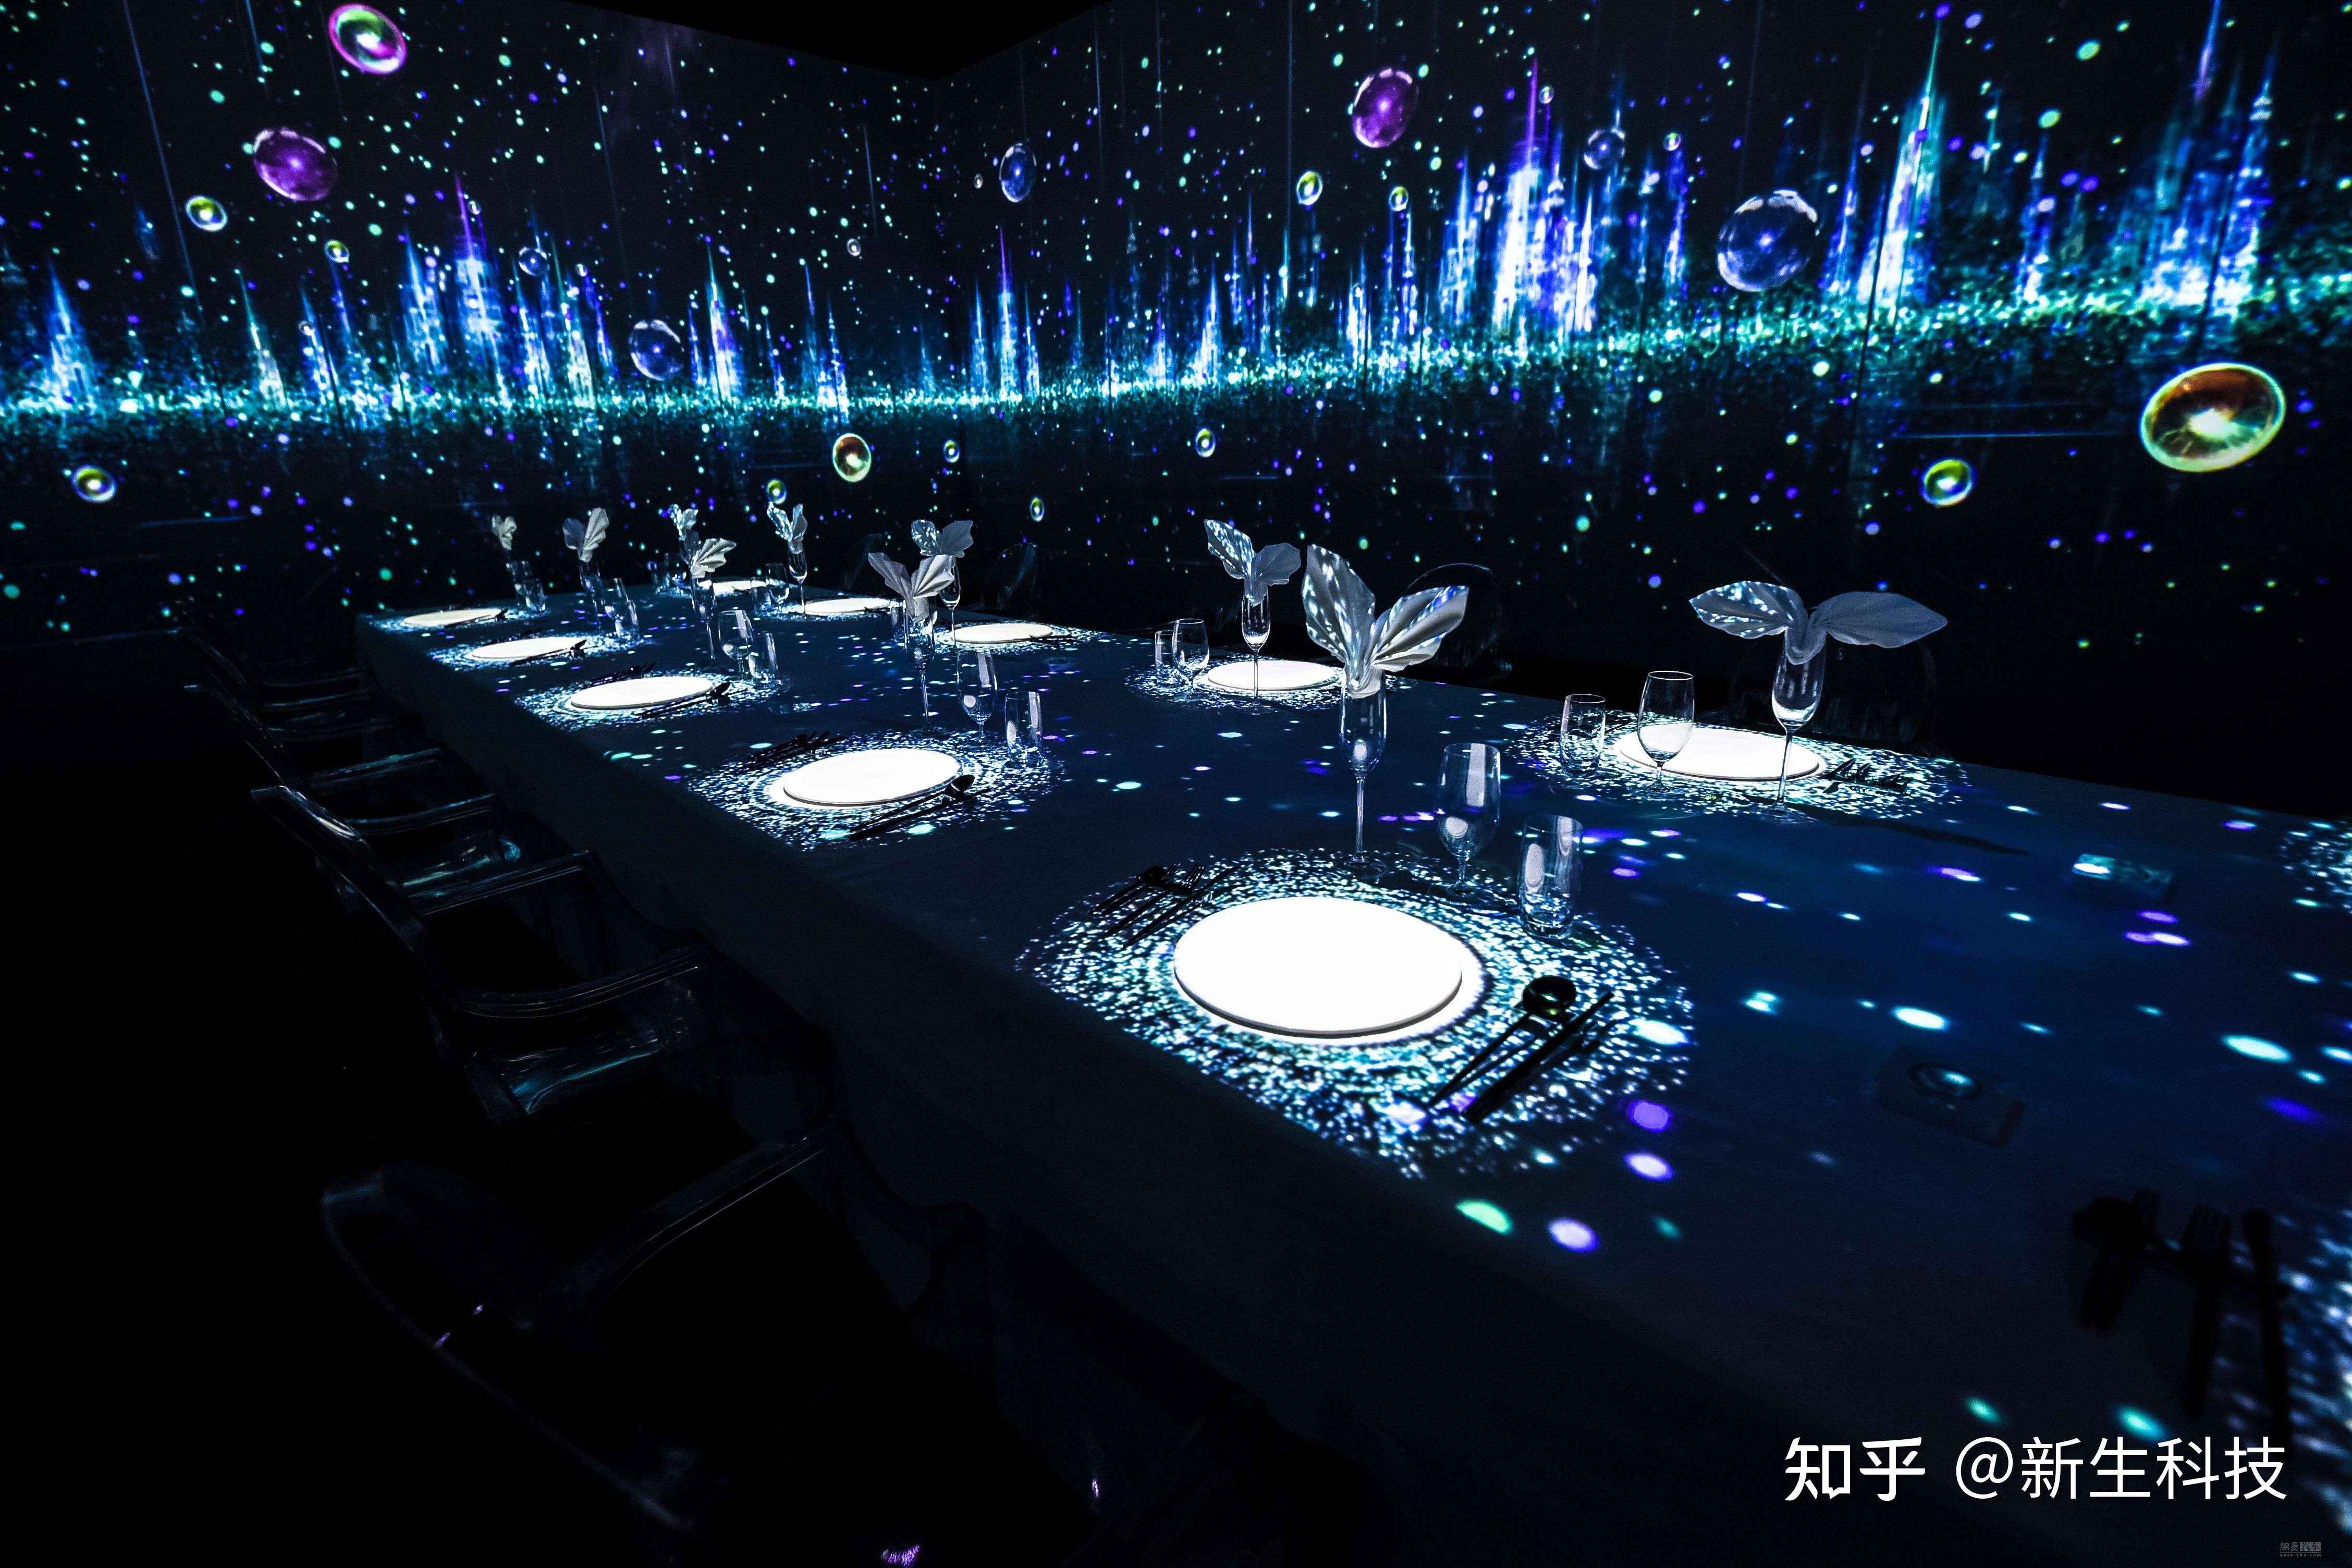 沉浸式宴会厅:采用了声,光,电,全息投影,裸眼3d,地面互动投影等高科技